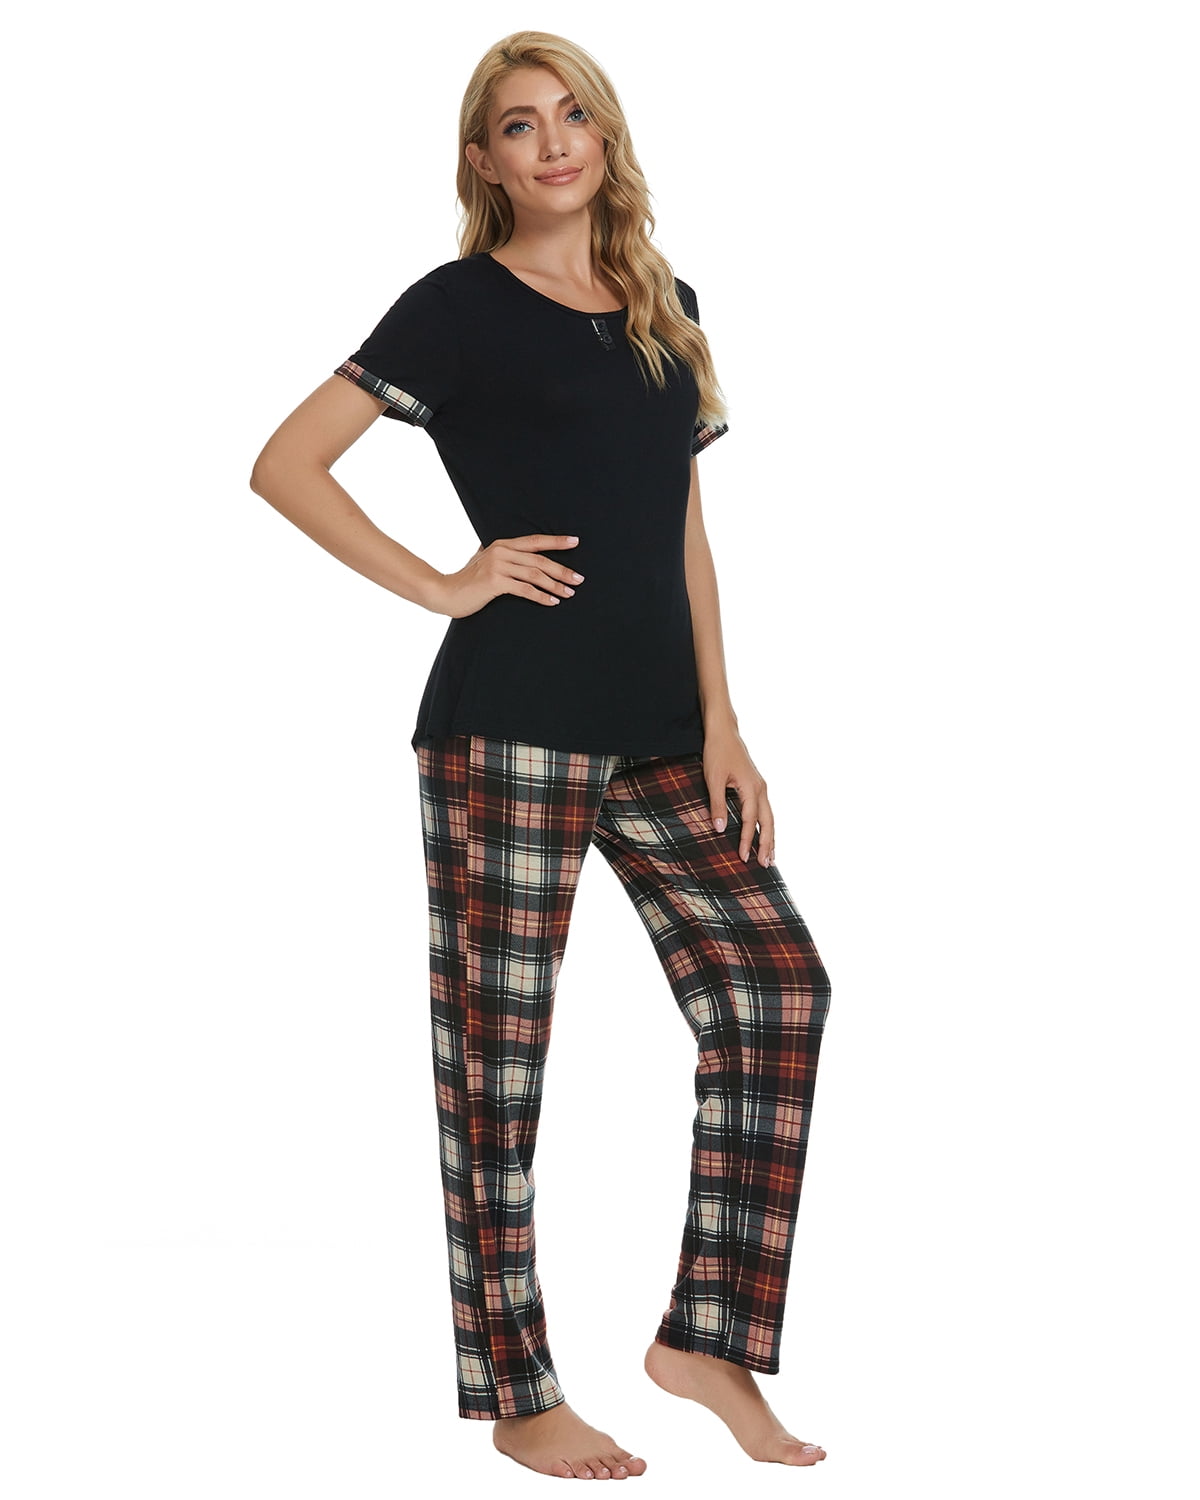 MINTLIMIT Women's Pyjama Sets Loungewear Summer Pjs Set Sleepwear with Pockets